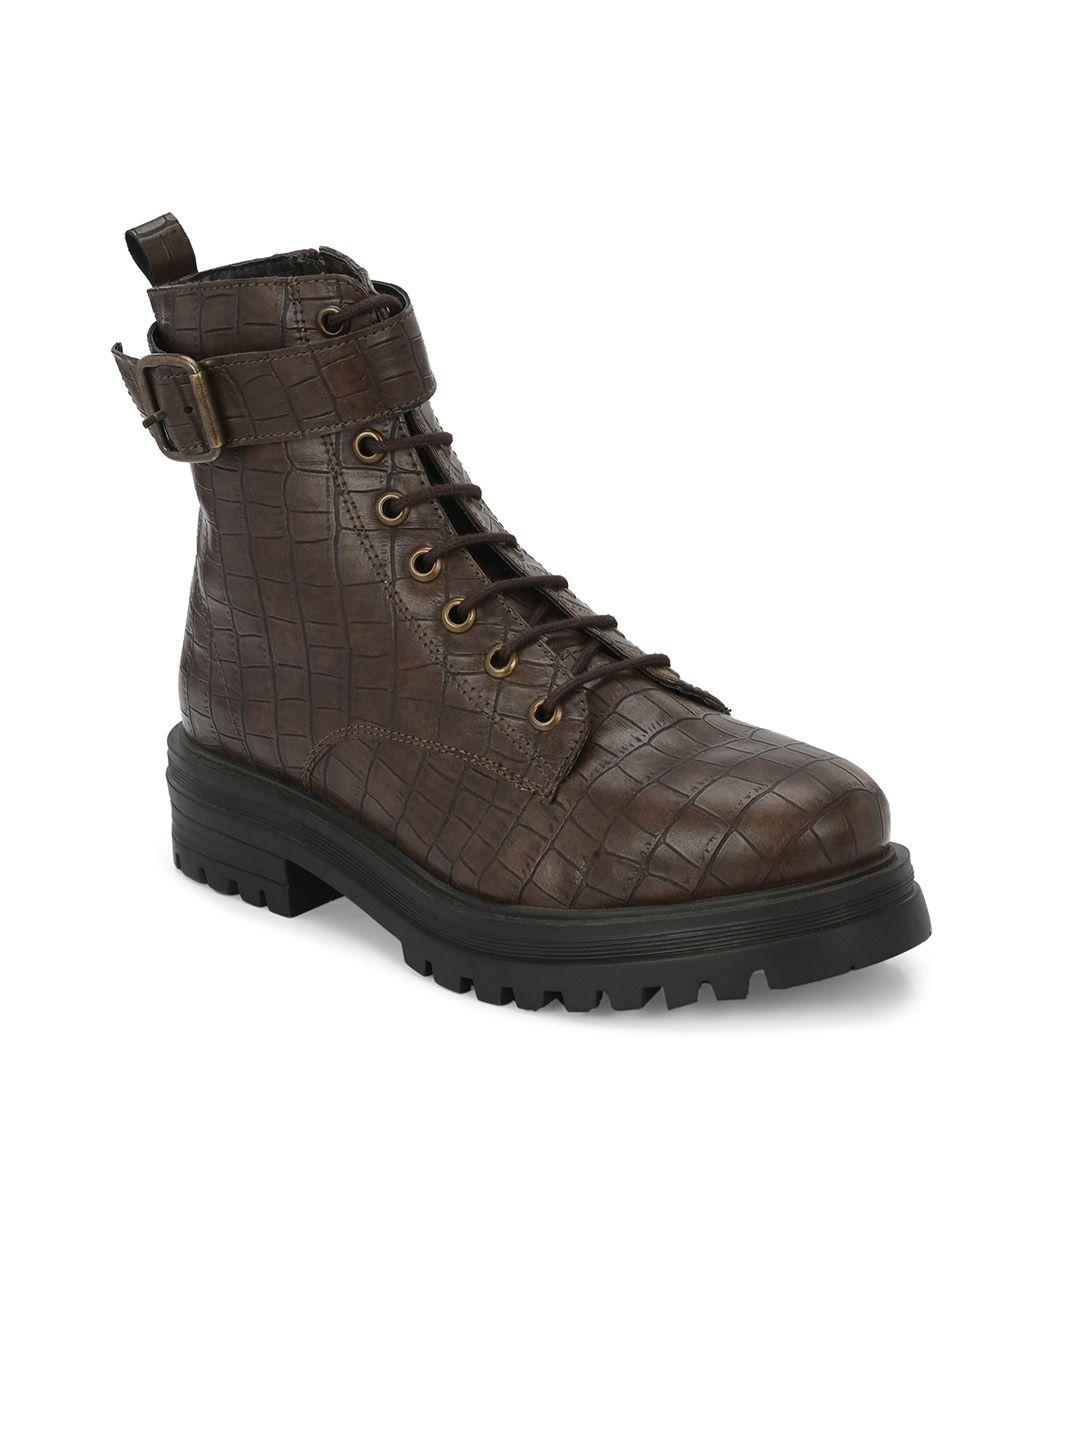 miseen women mid top textured platform heel regular boots with buckle detail